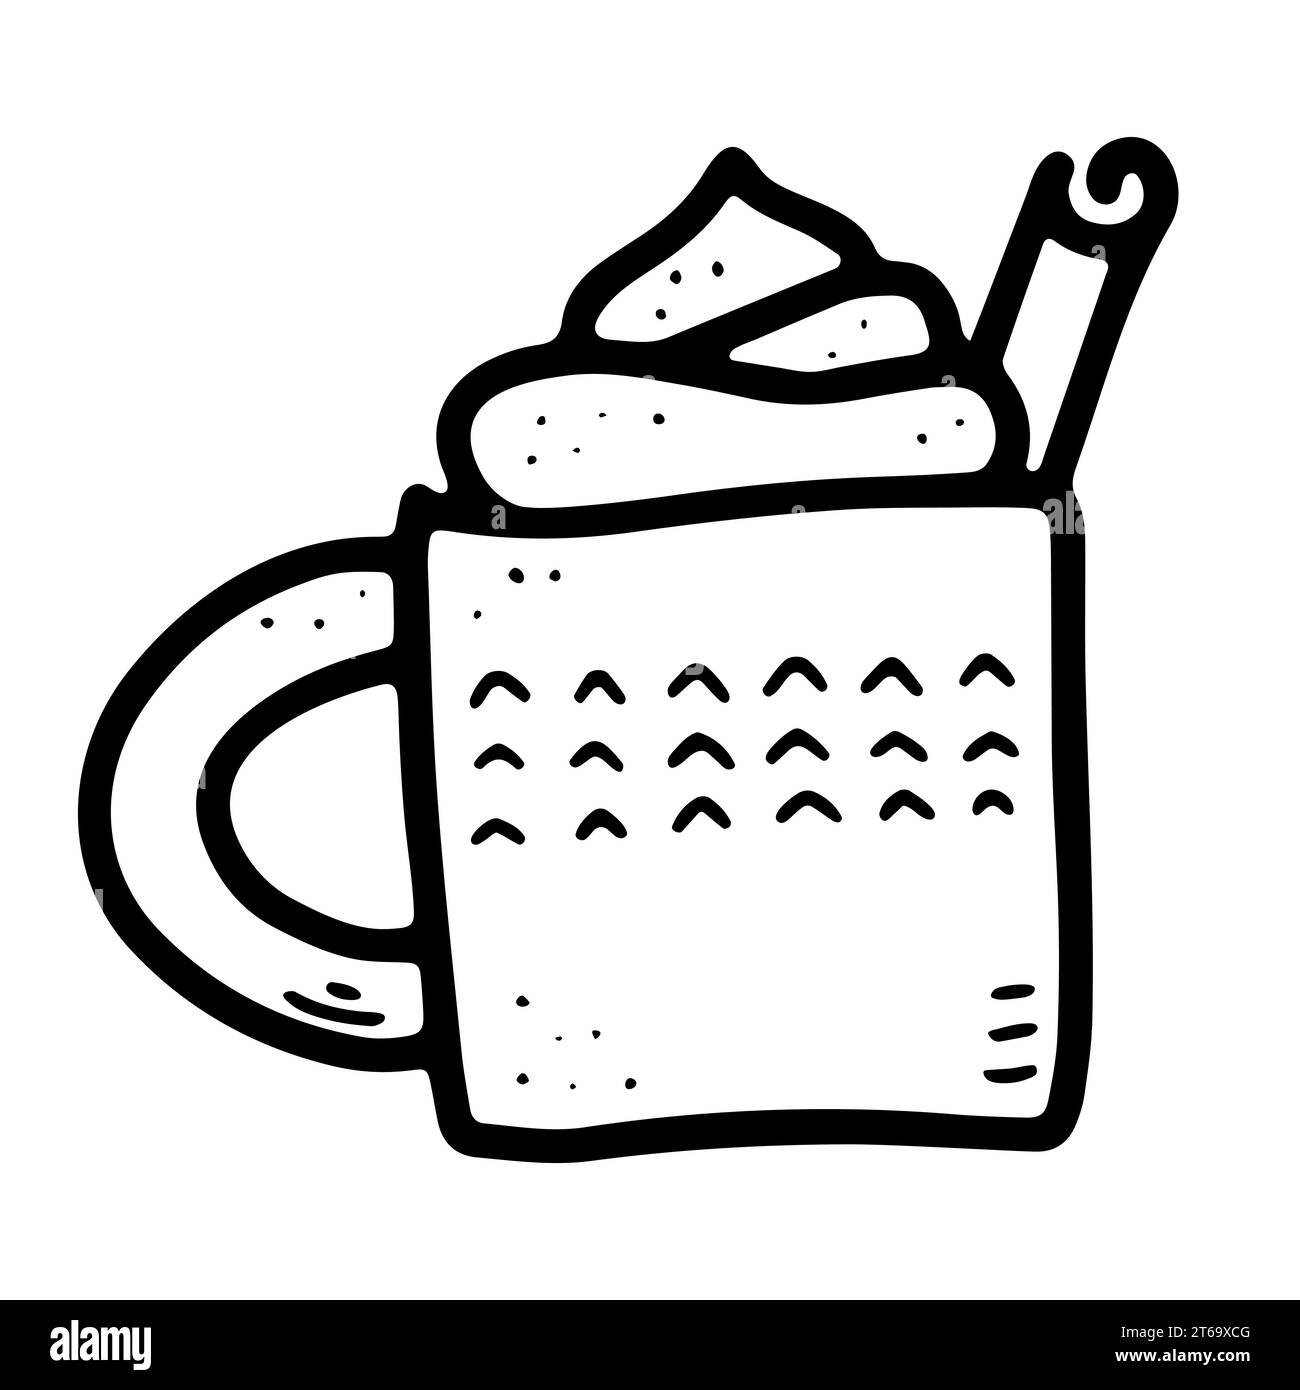 Illustrazione vettoriale di cibo scandinavo. Contorno della tazza con bevanda calda, schiuma, panna, cannella. Eggnog, caffè, cacao, cioccolato, latte su bianco Illustrazione Vettoriale